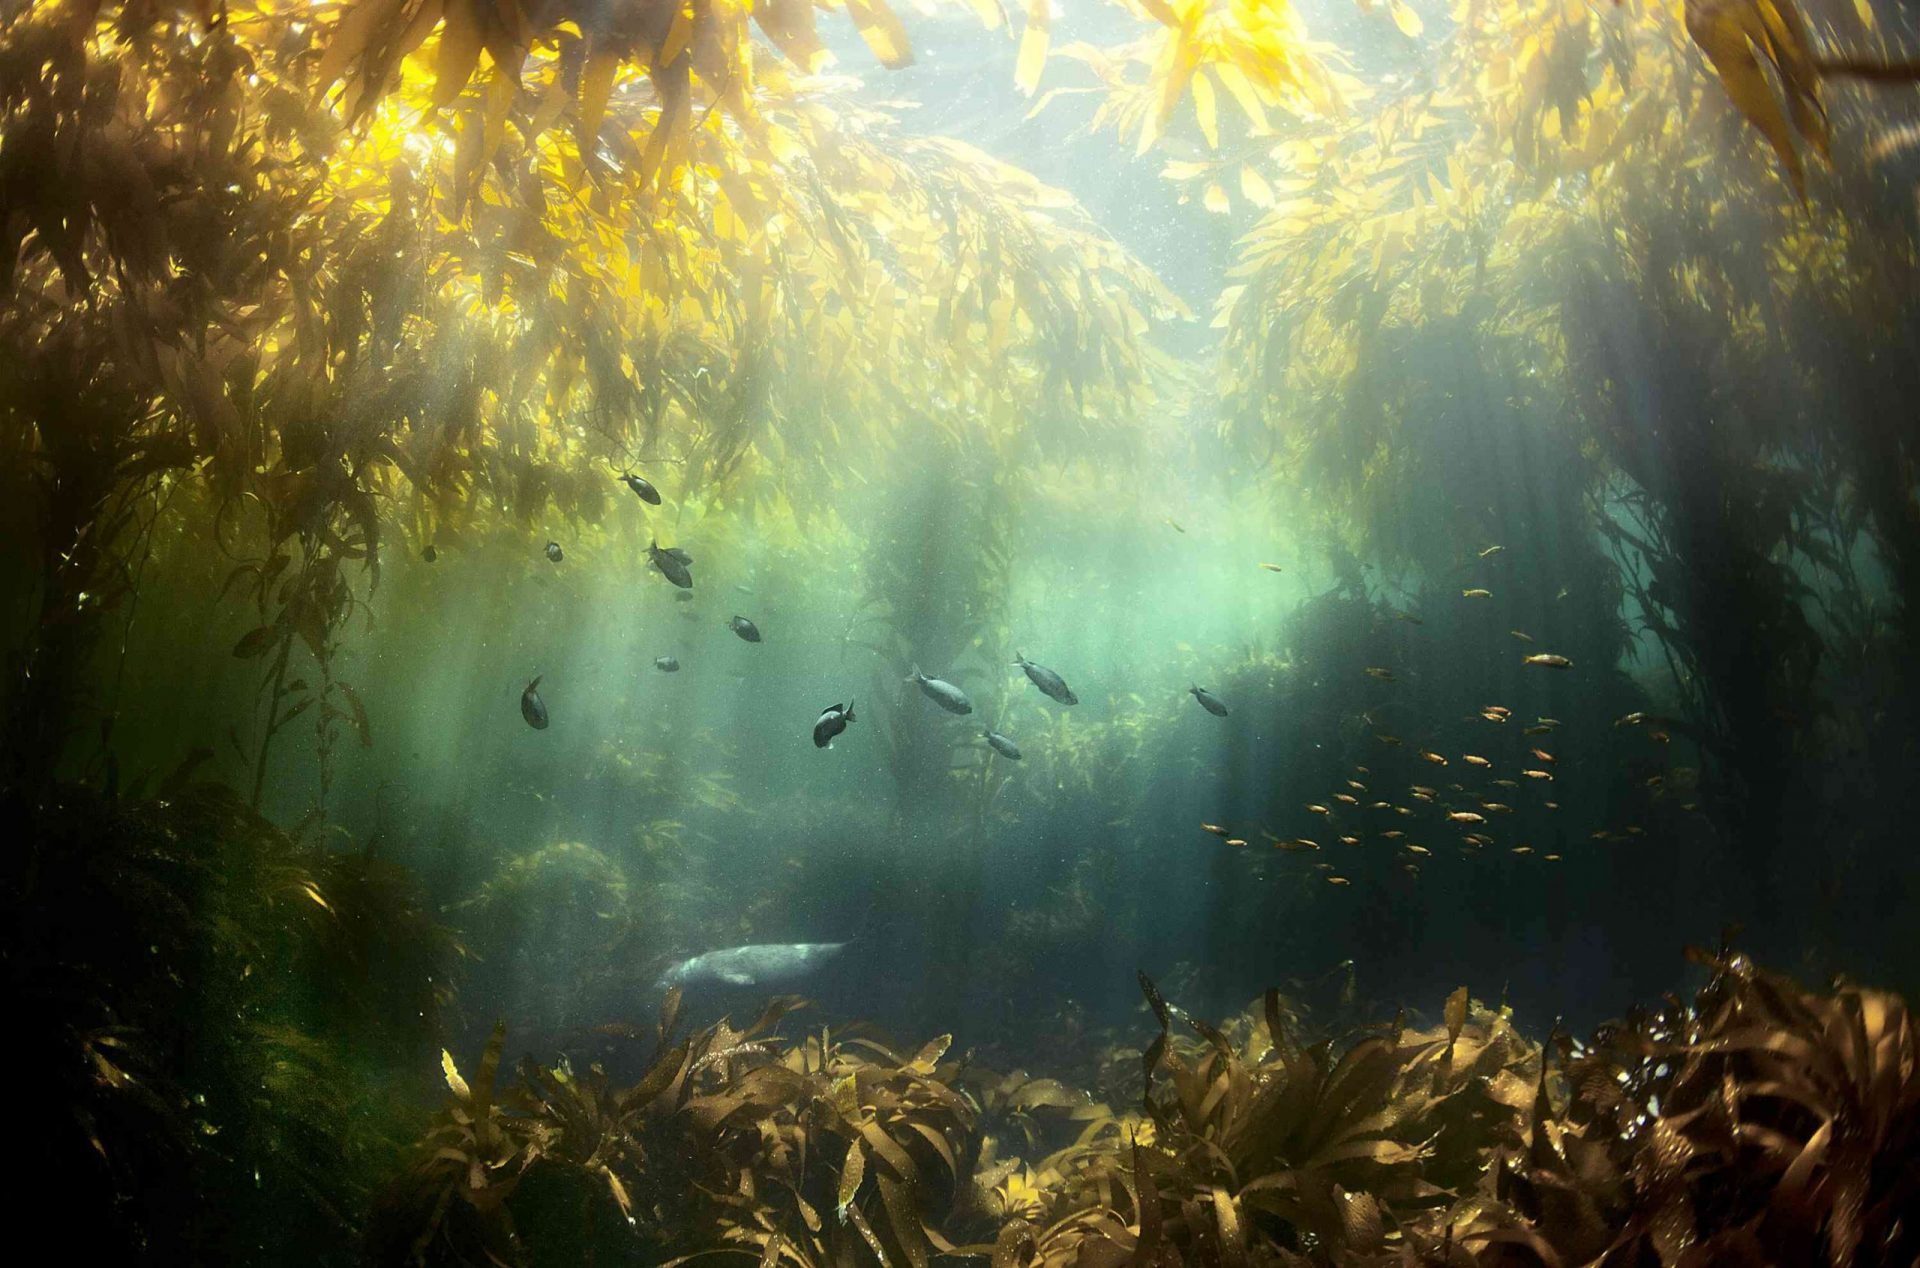 Una escena submarina del sol filtrándose a través de las algas marinas, iluminando a los peces y las hierbas marinas